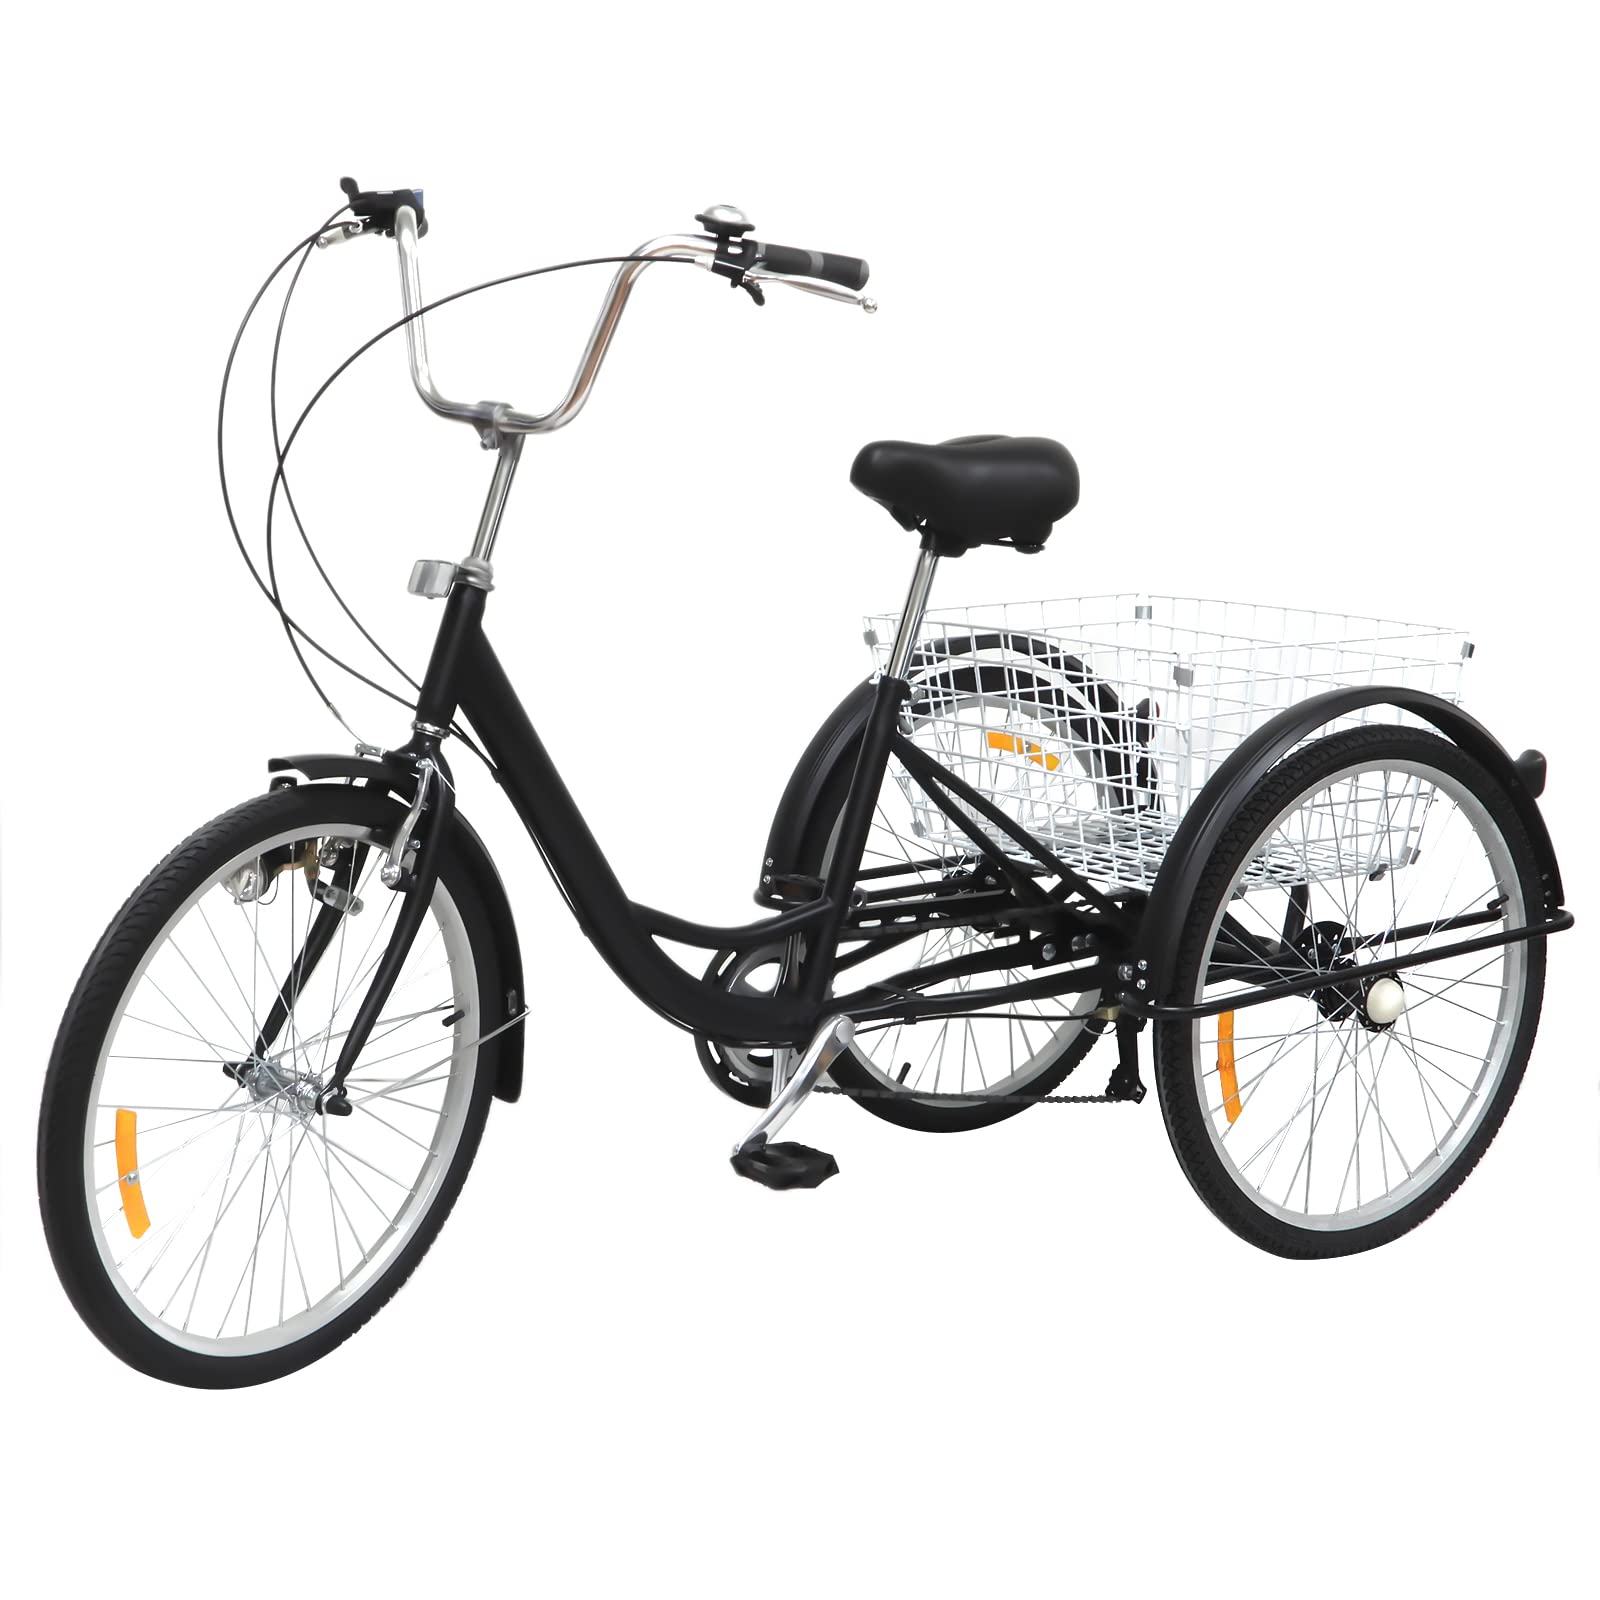 Ethedeal 24" Dreirad für Erwachsene mit Einkaufskorb, 6 Geschwindigkeit 3 Rad Fahrrad Senioren Dreirad Cruise Bike, Comfort Fahrrad für Outdoor Sports Shopping (Schwarz)